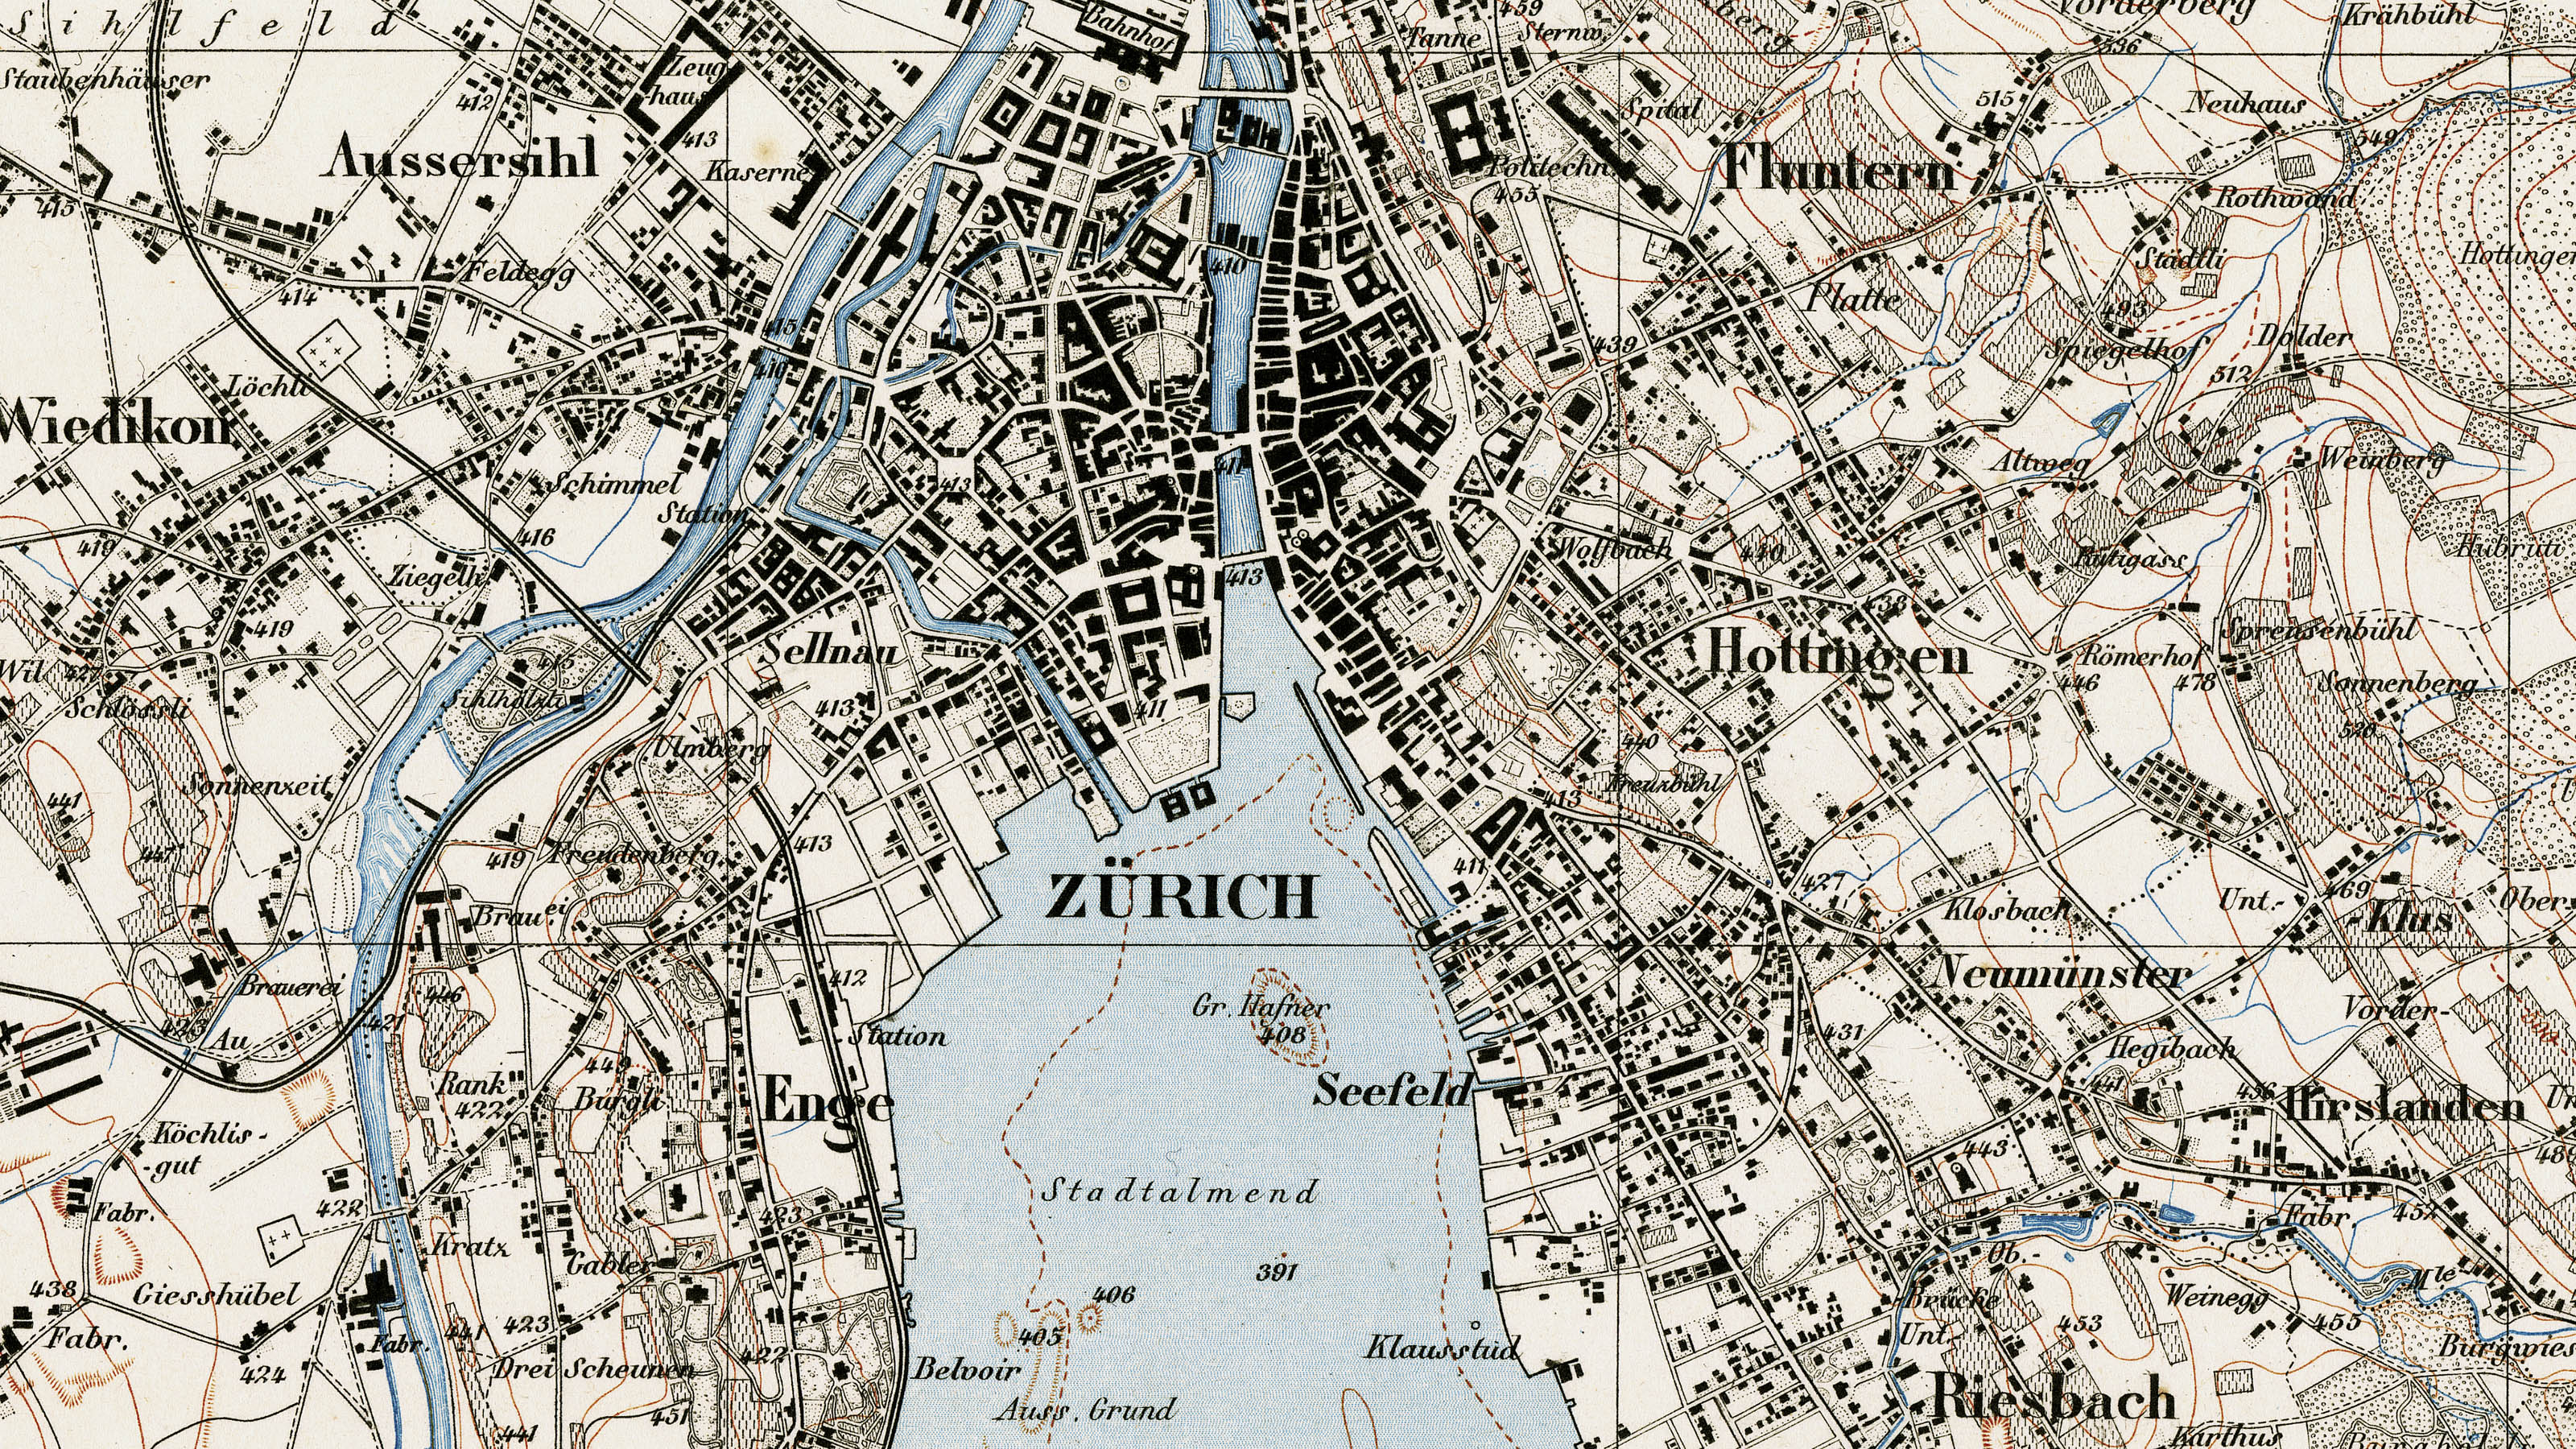 Sezione della carta Siegfried nell'area di Zurigo. La mappa risale al 1881.